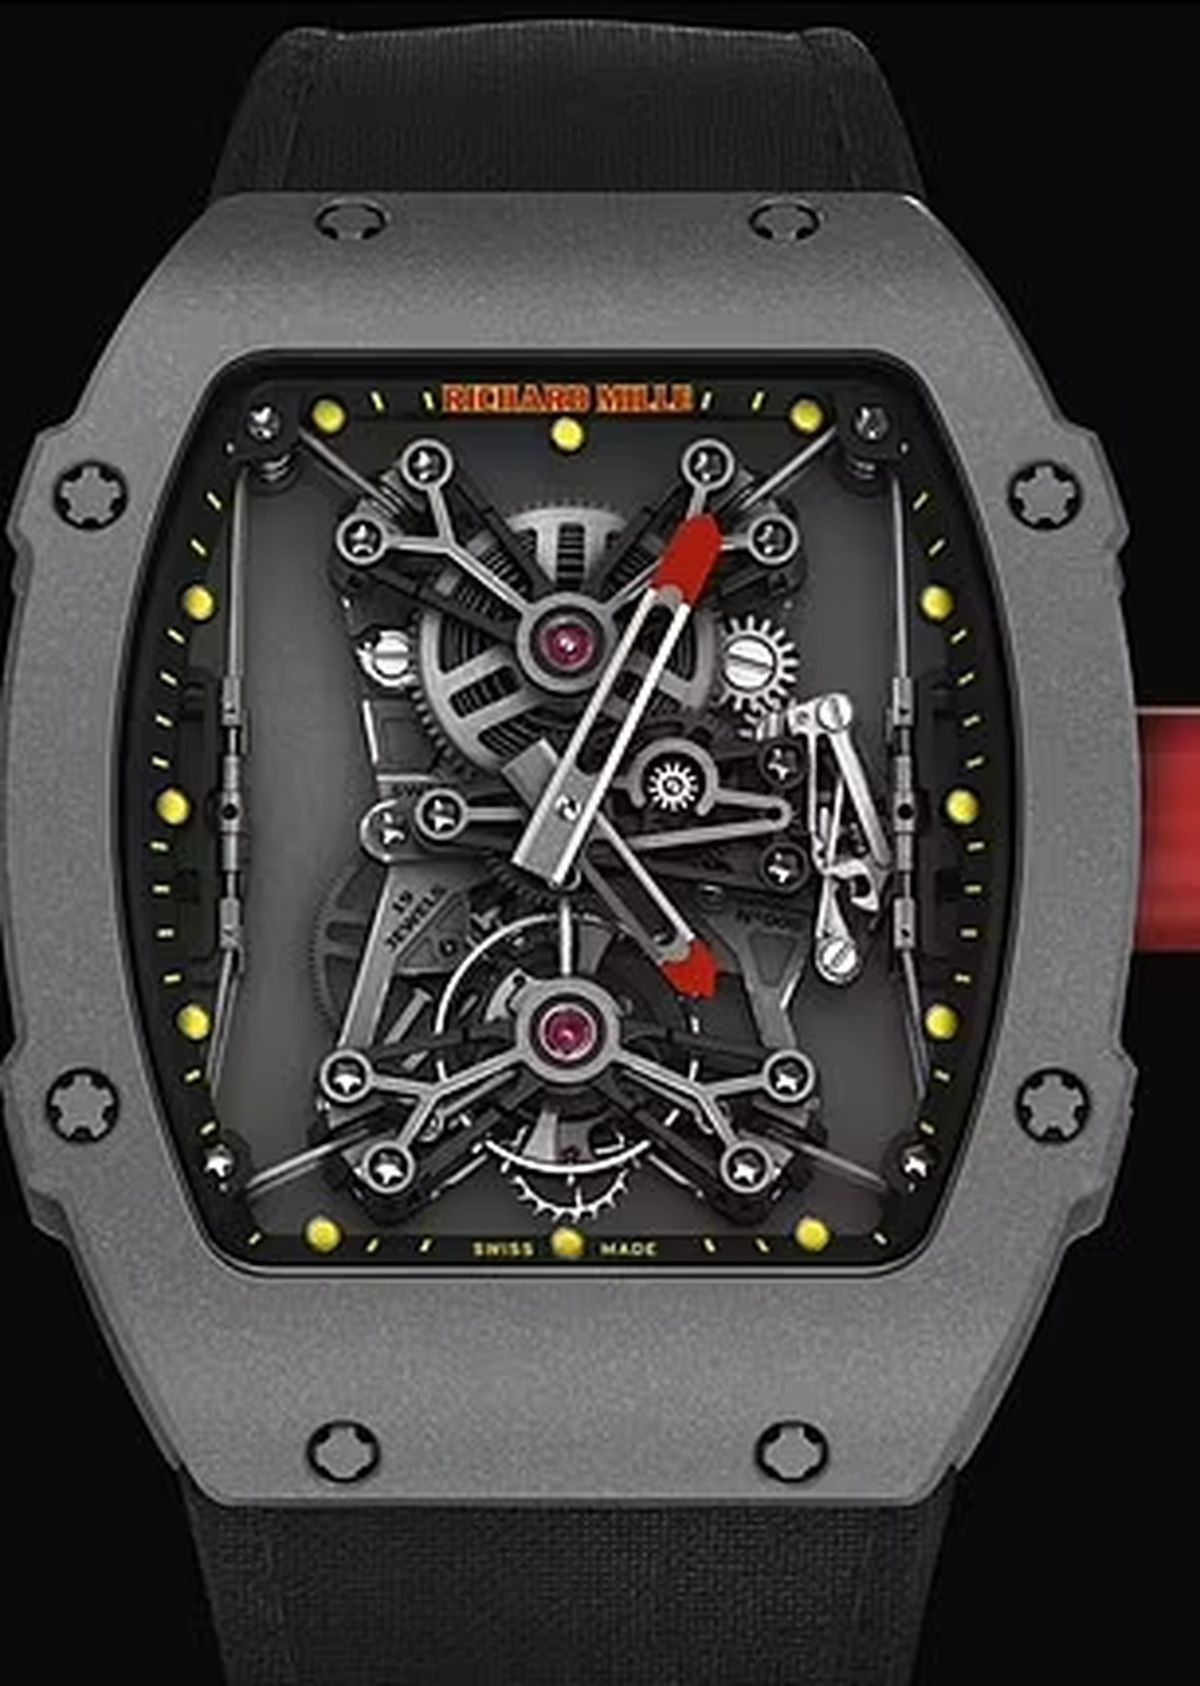 Ceasul de 1,1 milioane de lire sterline, purtat de Pep Guardiola